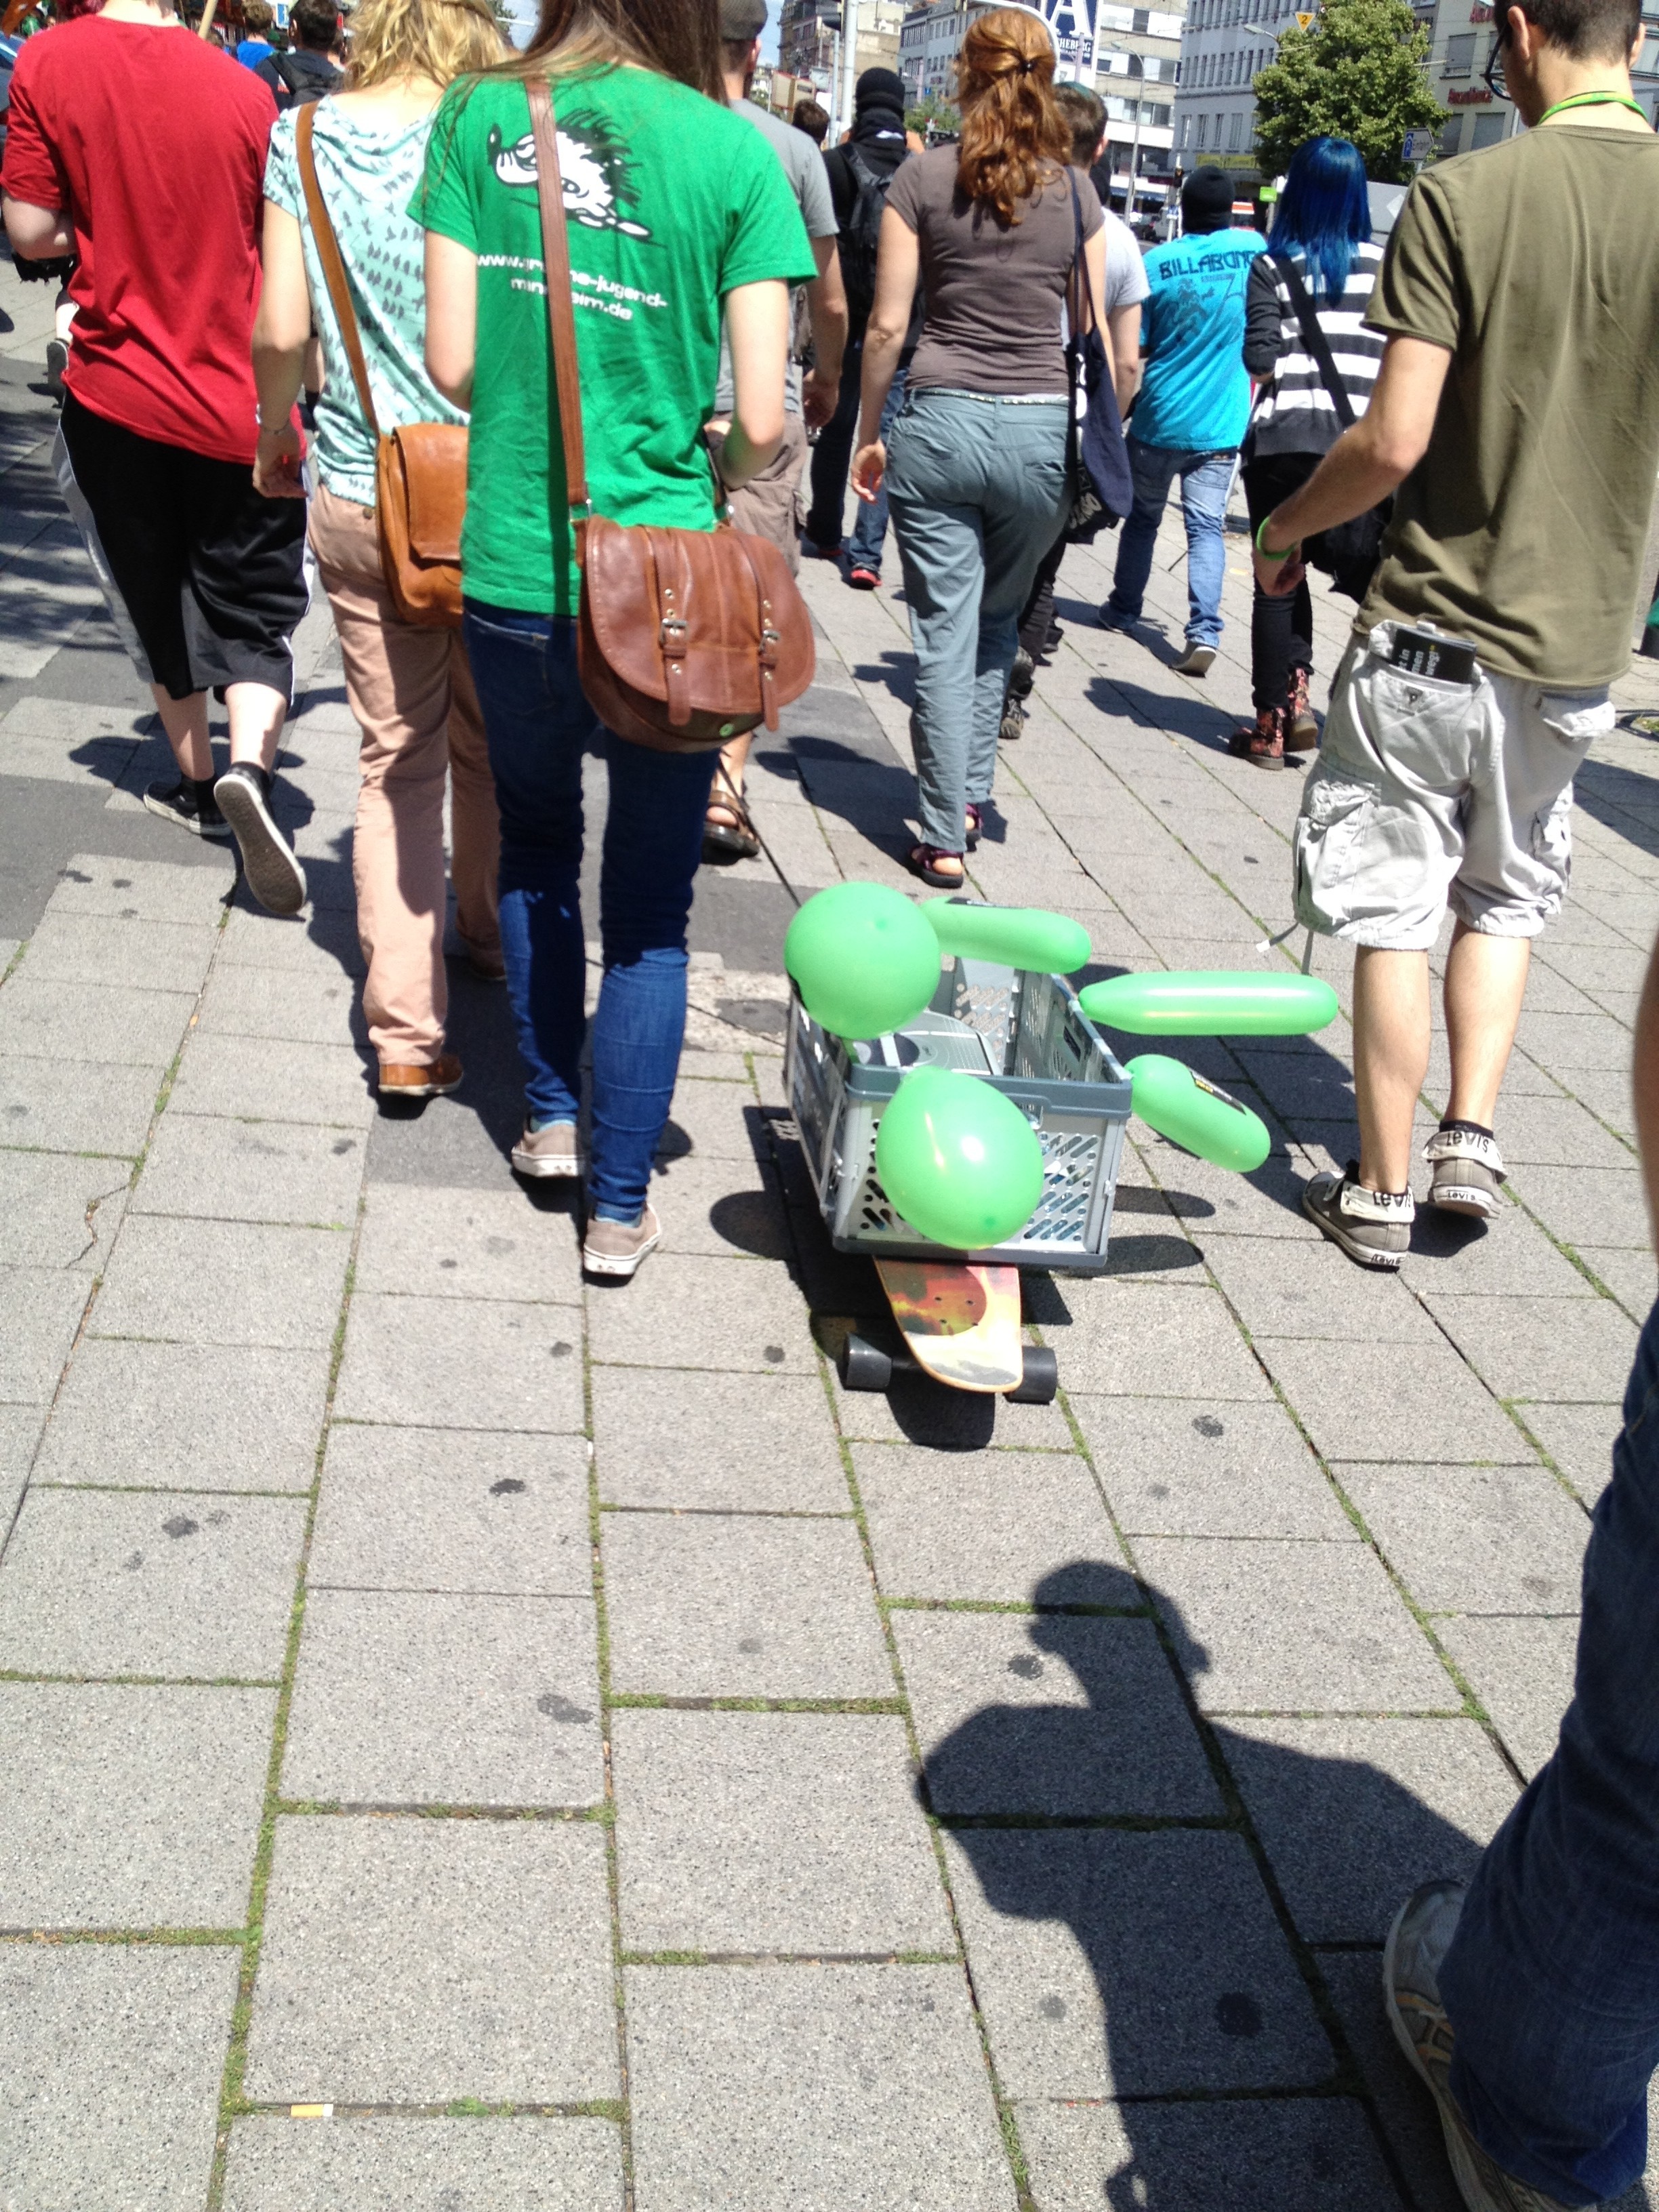 Der Lautsprecherwagen der grünen Jugend auf der Anti-Acta Demo in Mannheim